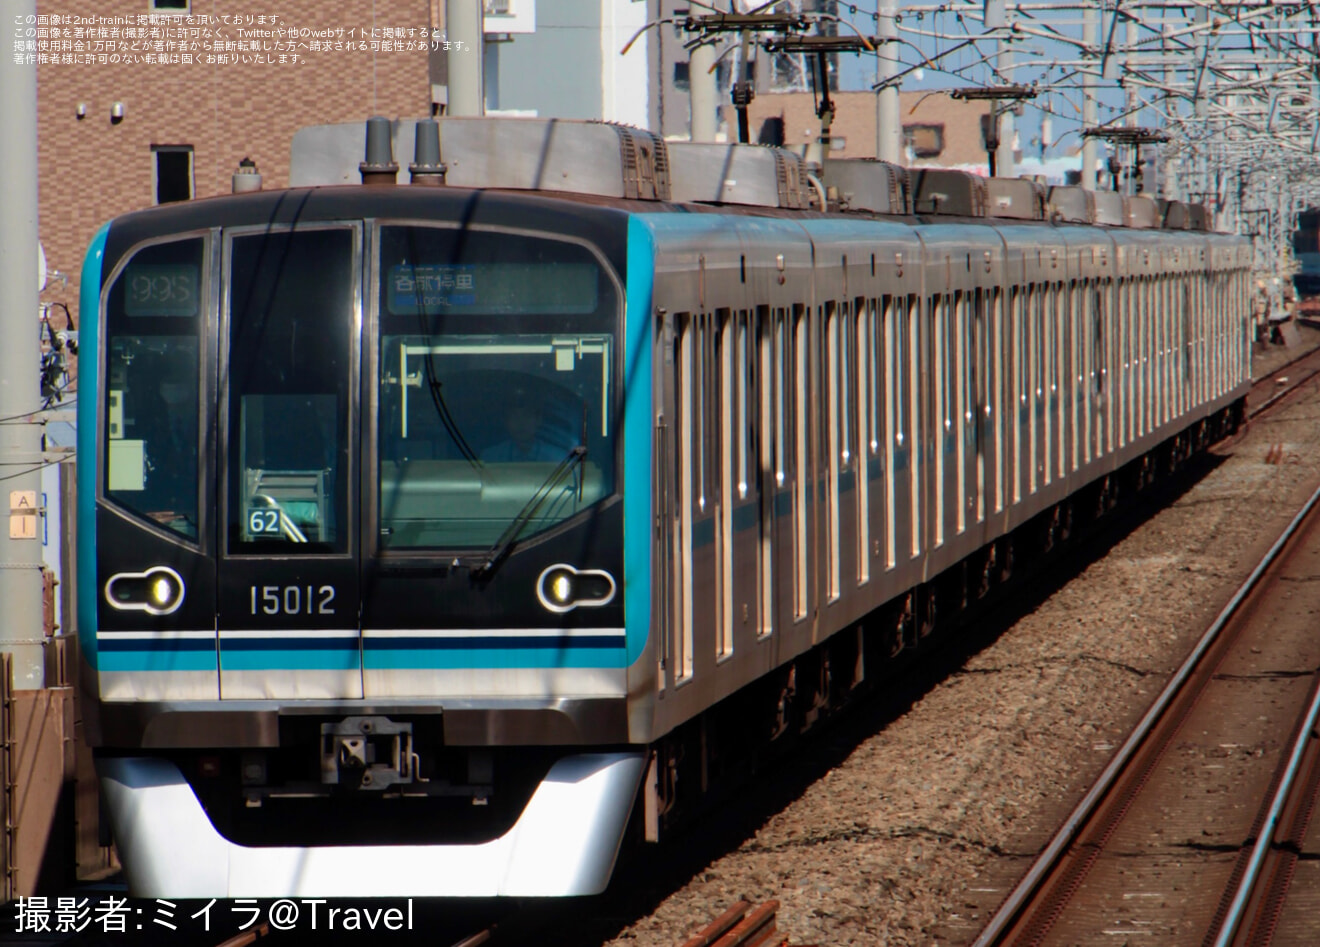 【メトロ】南砂町駅線路切り替え工事による西葛西行き列車の拡大写真